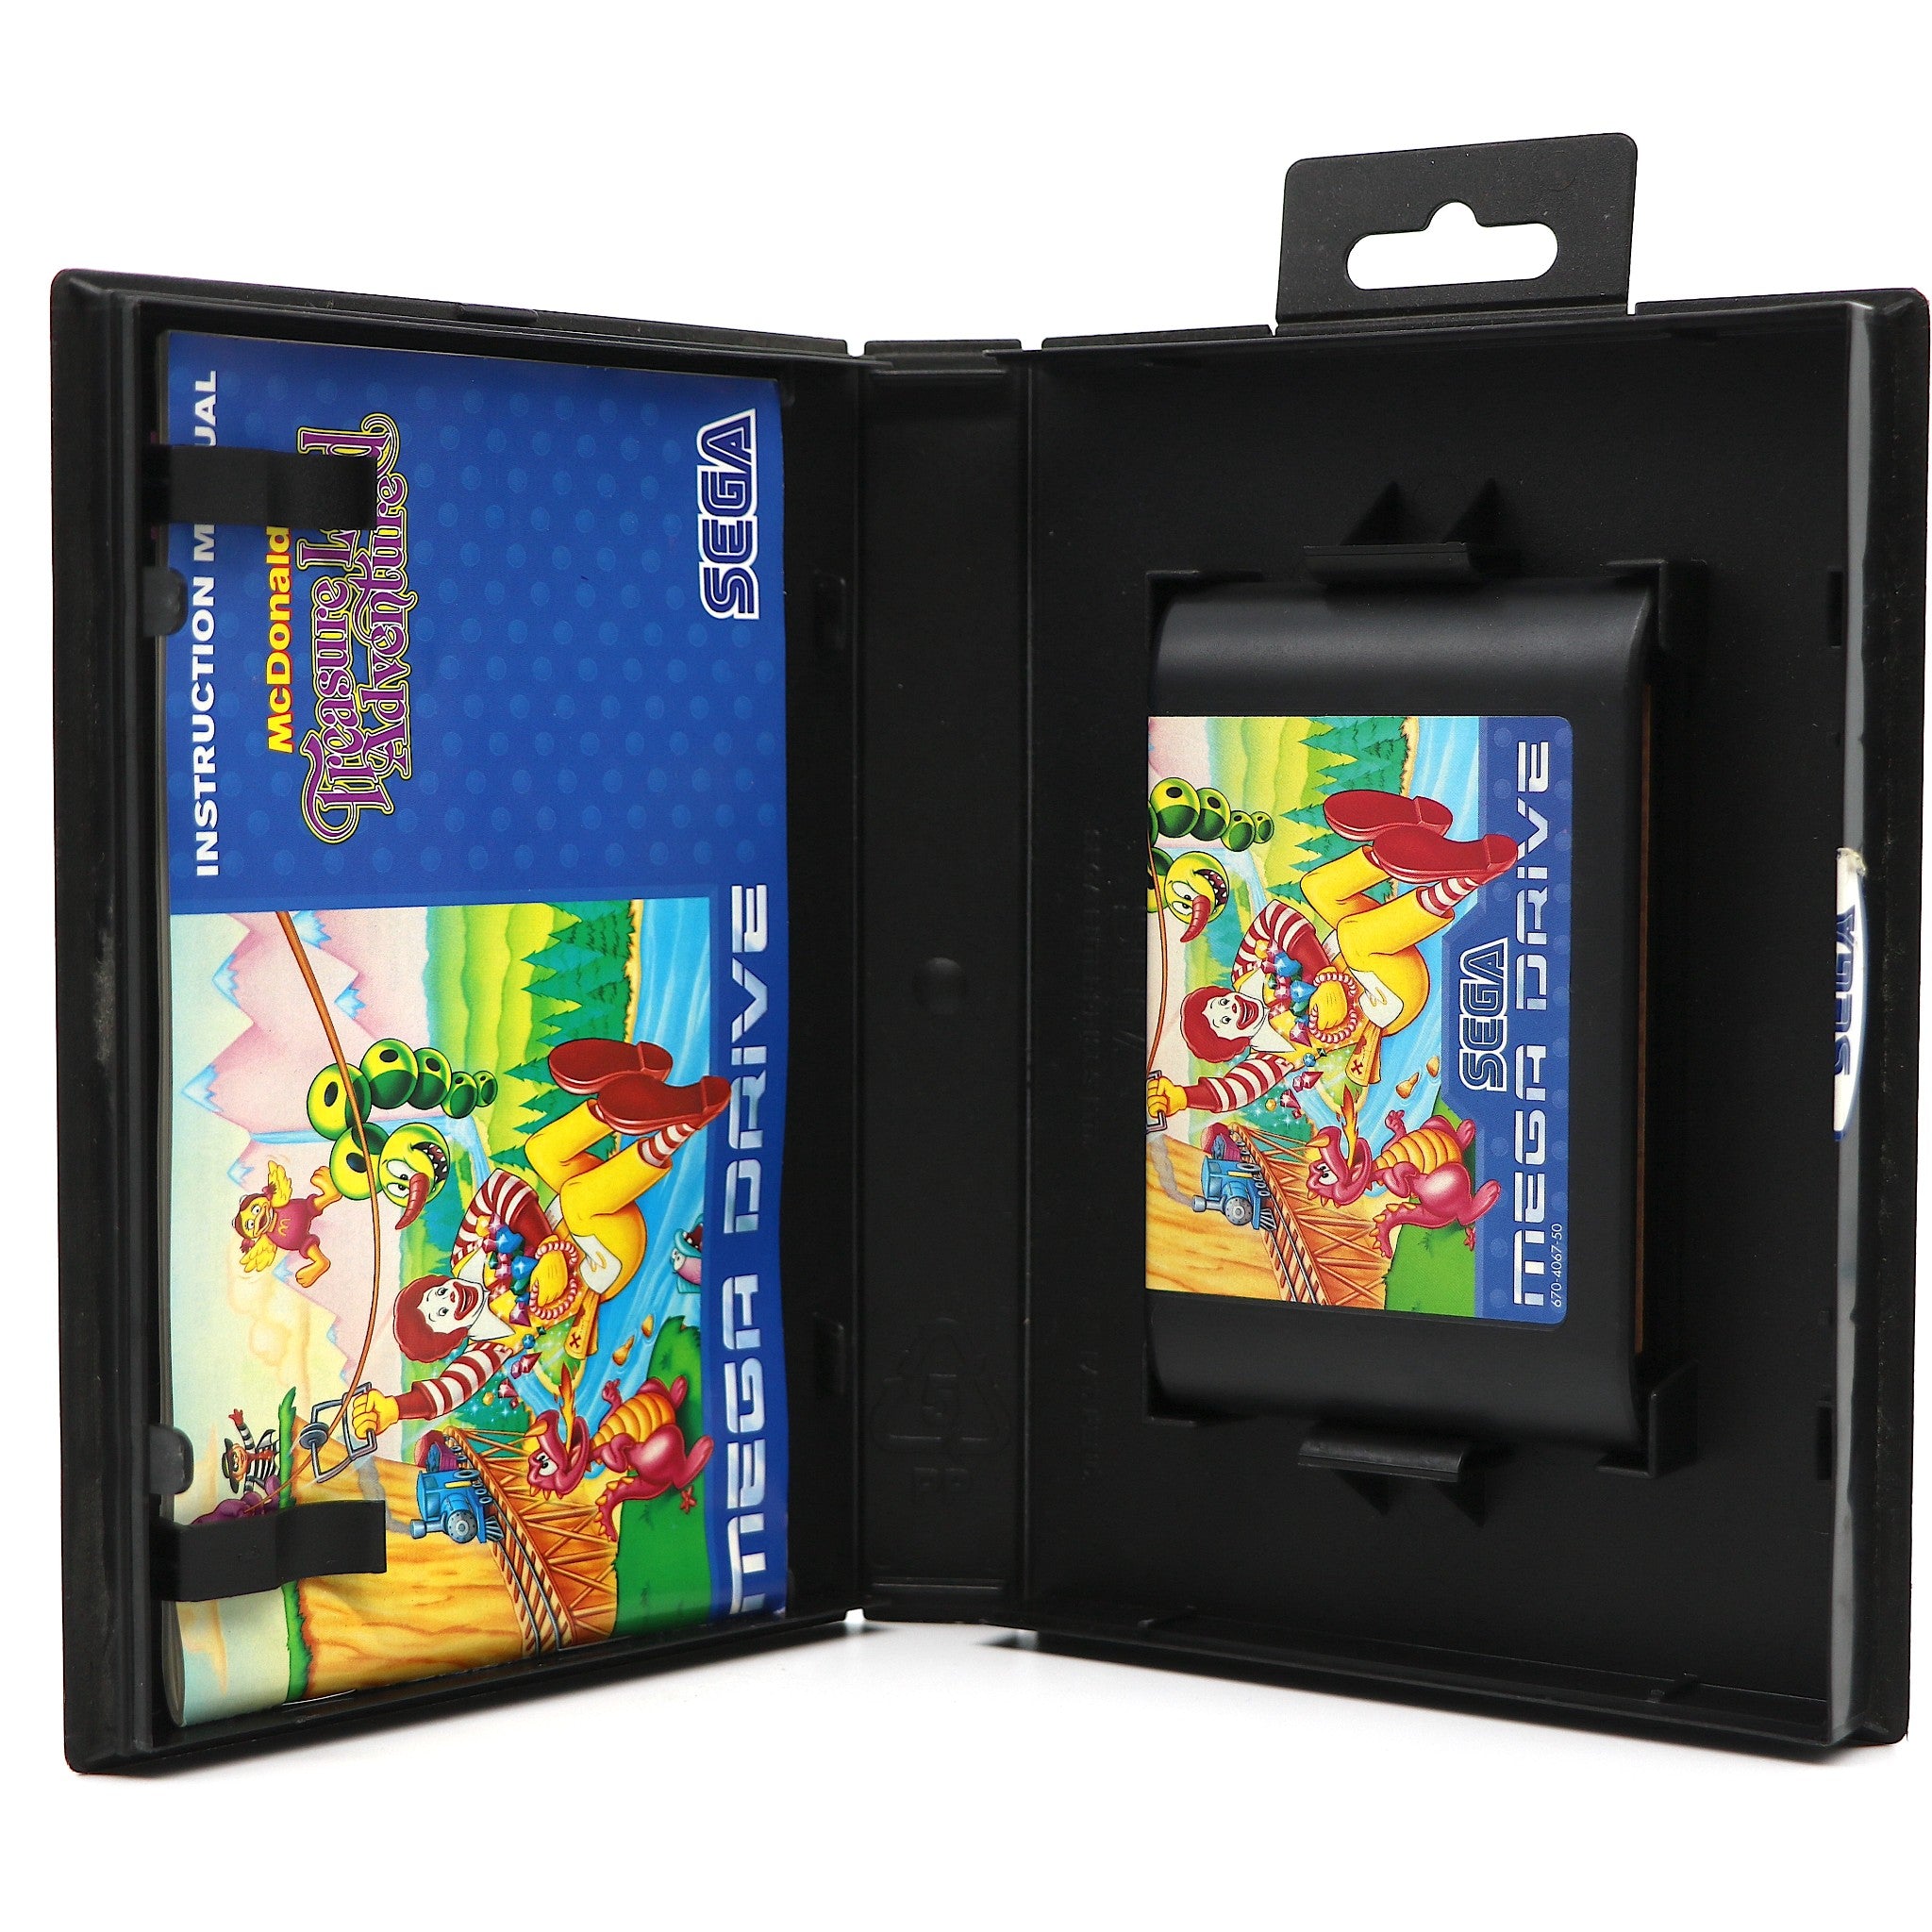 Treasure Land Adventure McDonald's | Sega Mega Drive Game Collectable Condition